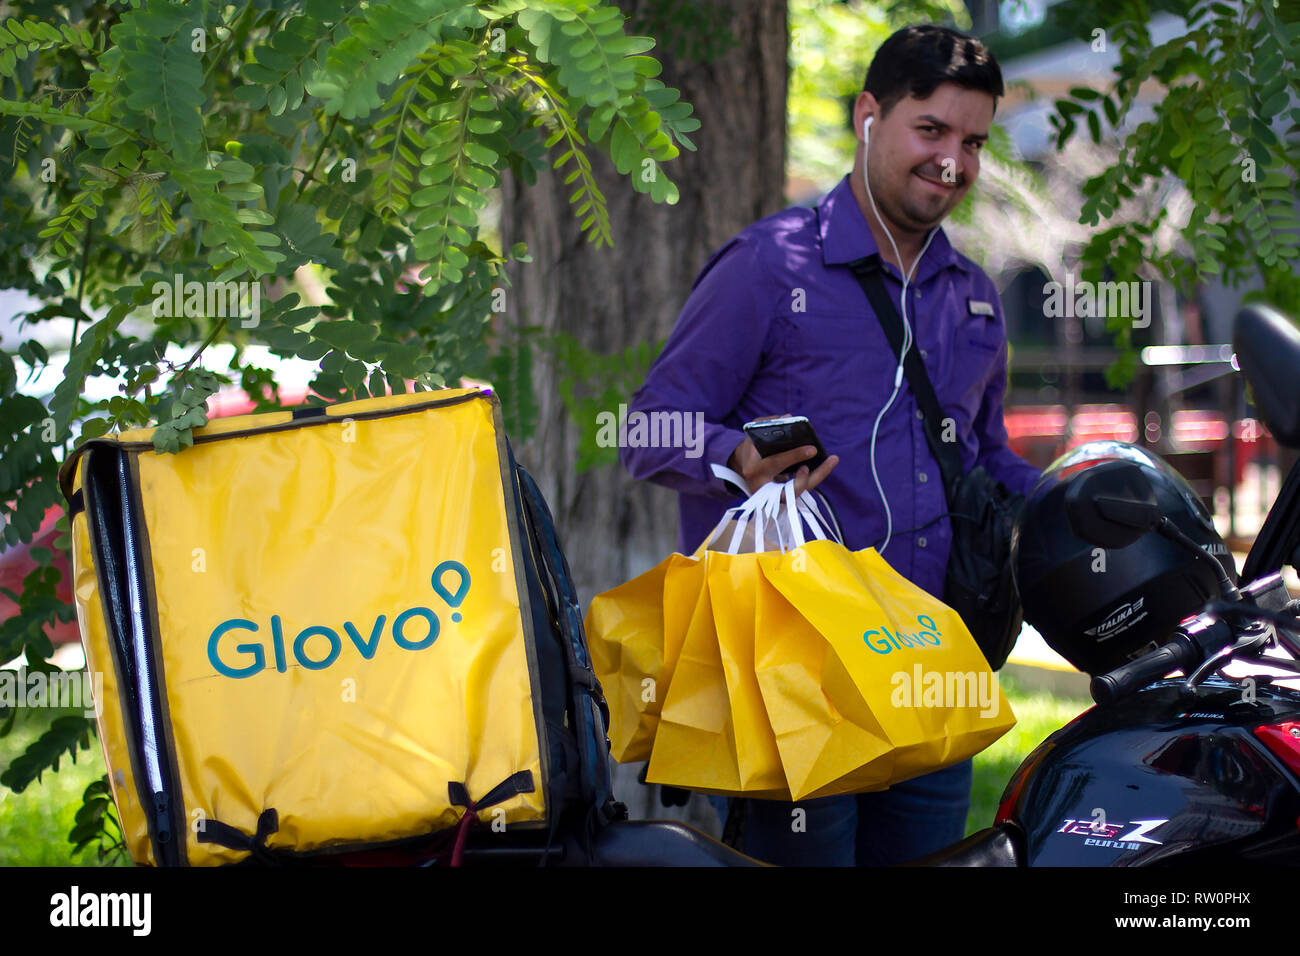 Lima, Perú - El 3 de marzo de 2019: El Hombre sonriendo con bolsas Glovo trabajando en el servicio de entrega de alimentos, de pie junto a su moto. Compartir economía colaborativa Foto de stock